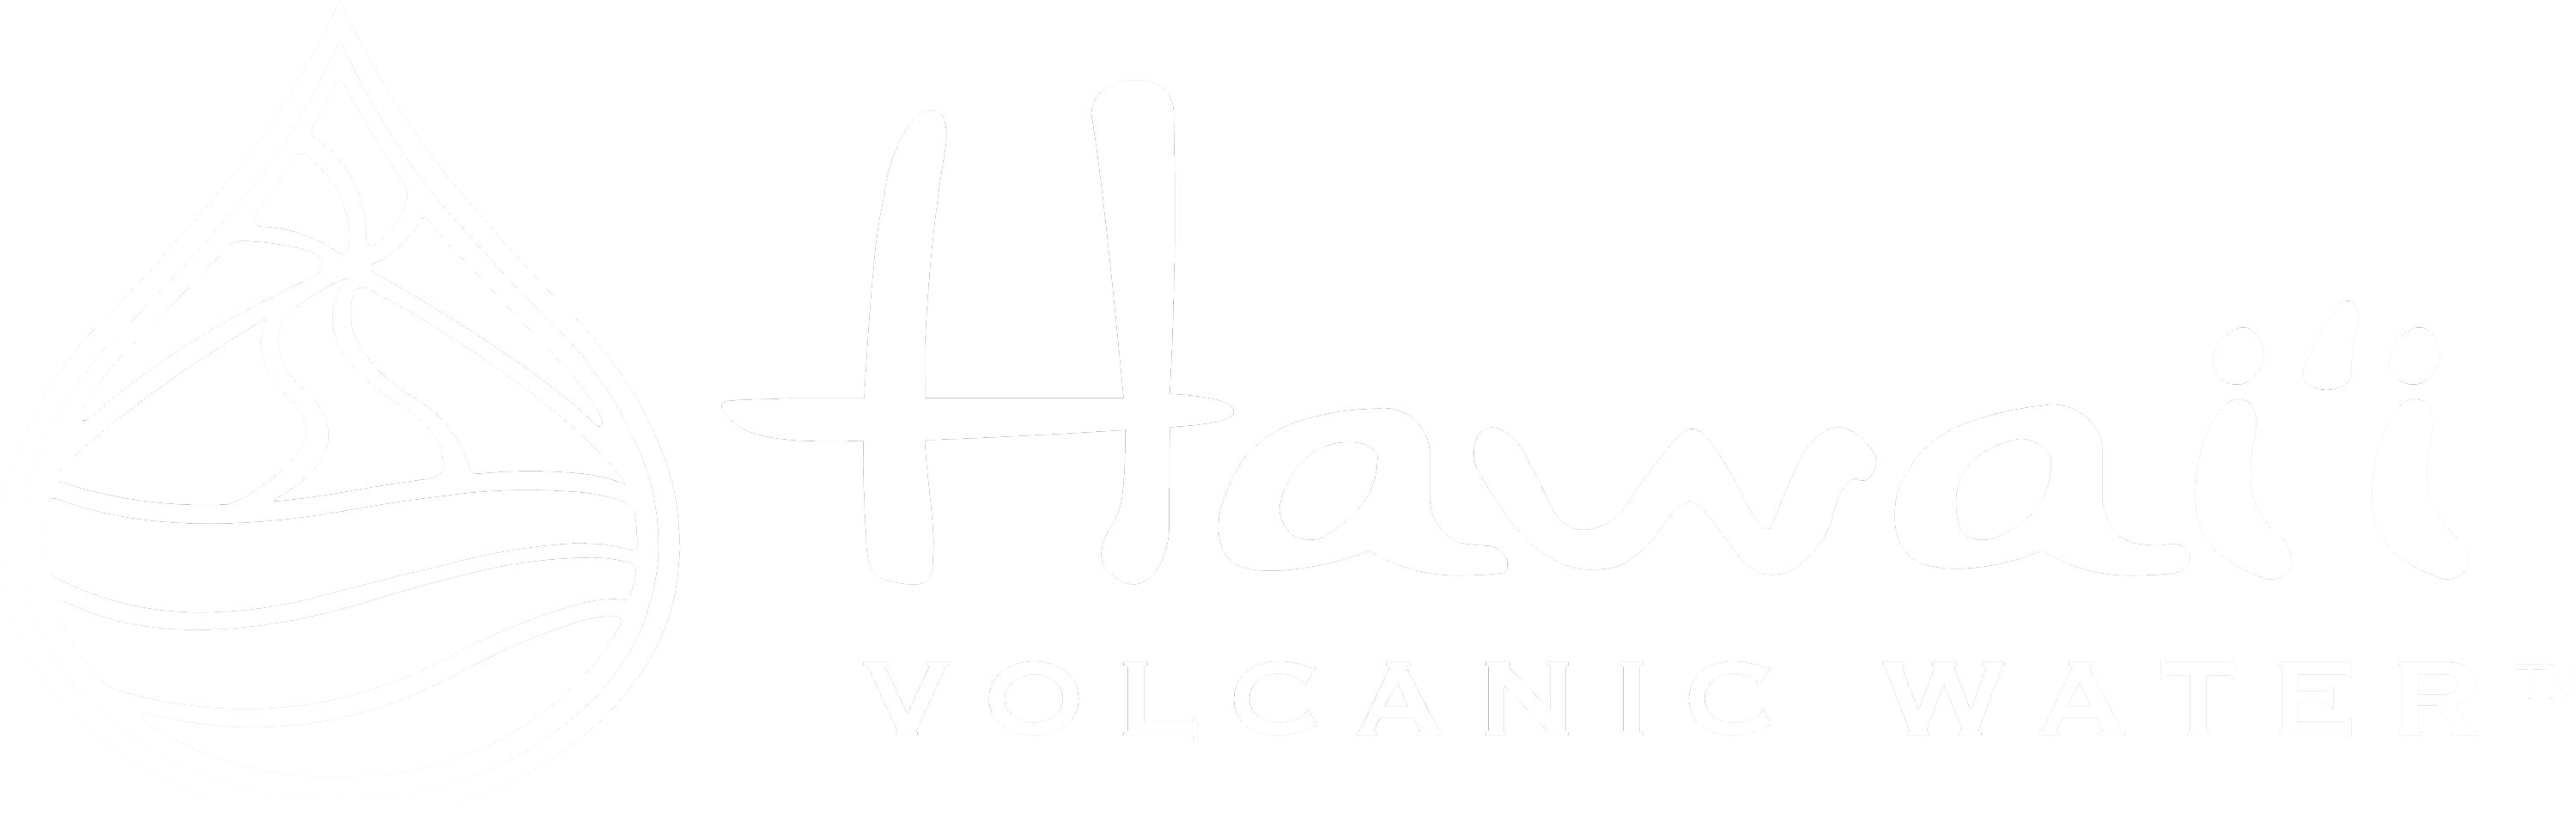 HawaiiVolcanic_Logo